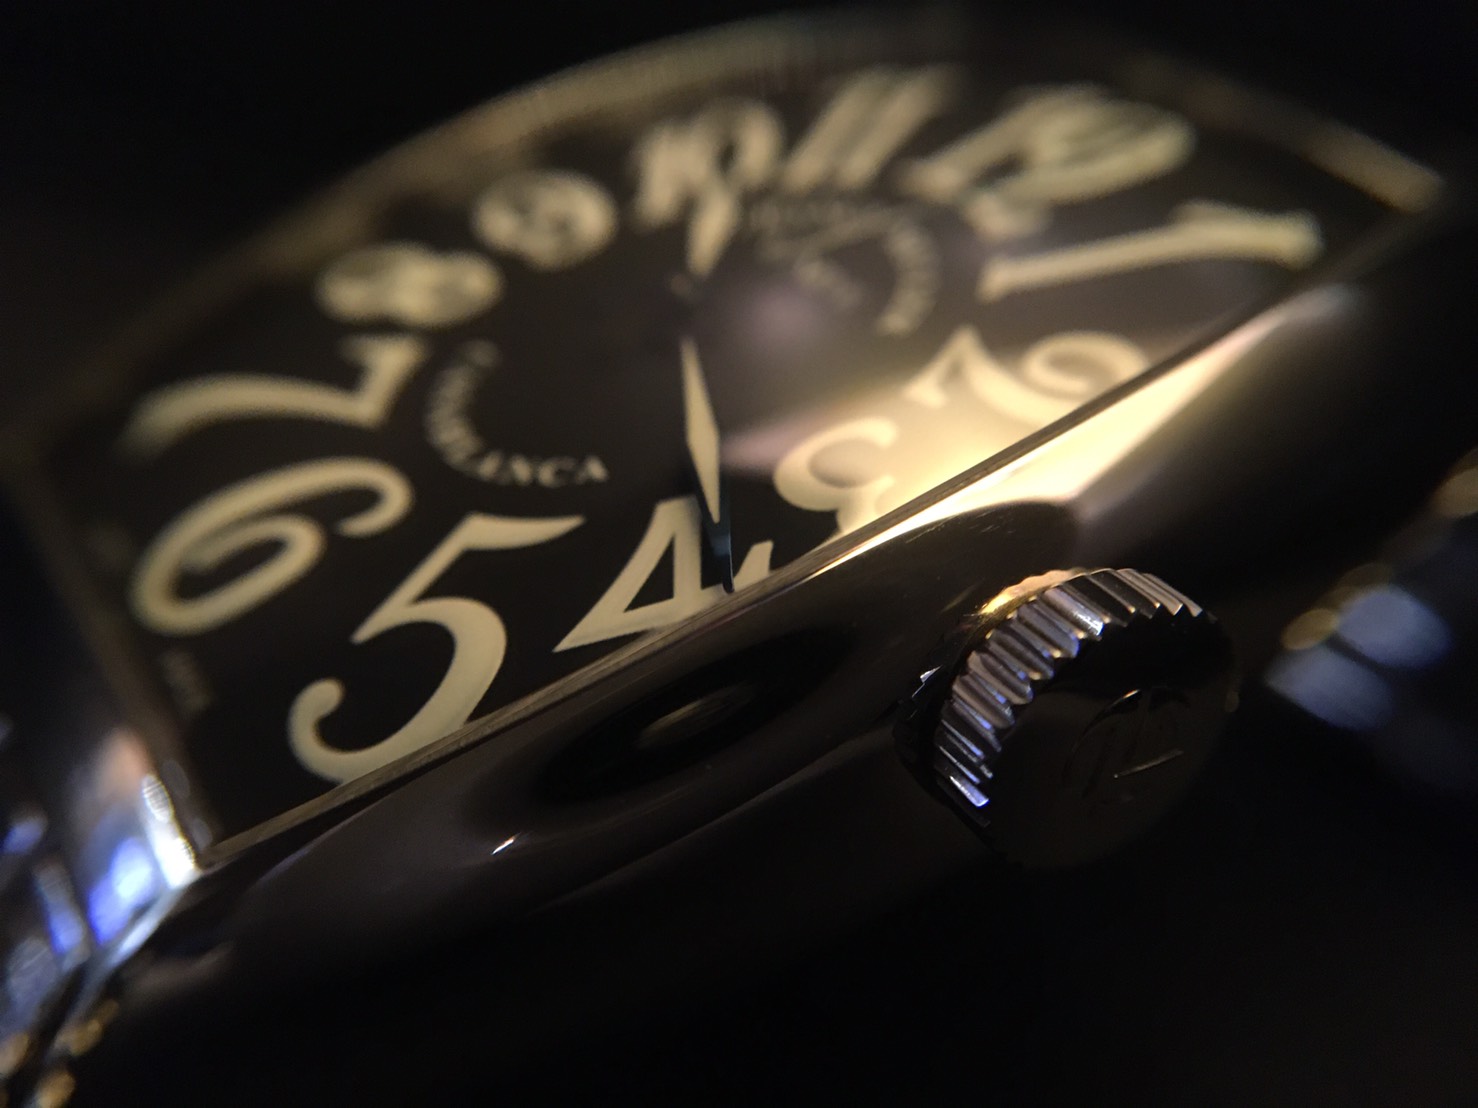 フランクミュラーの腕時計、カサブランカの文字盤